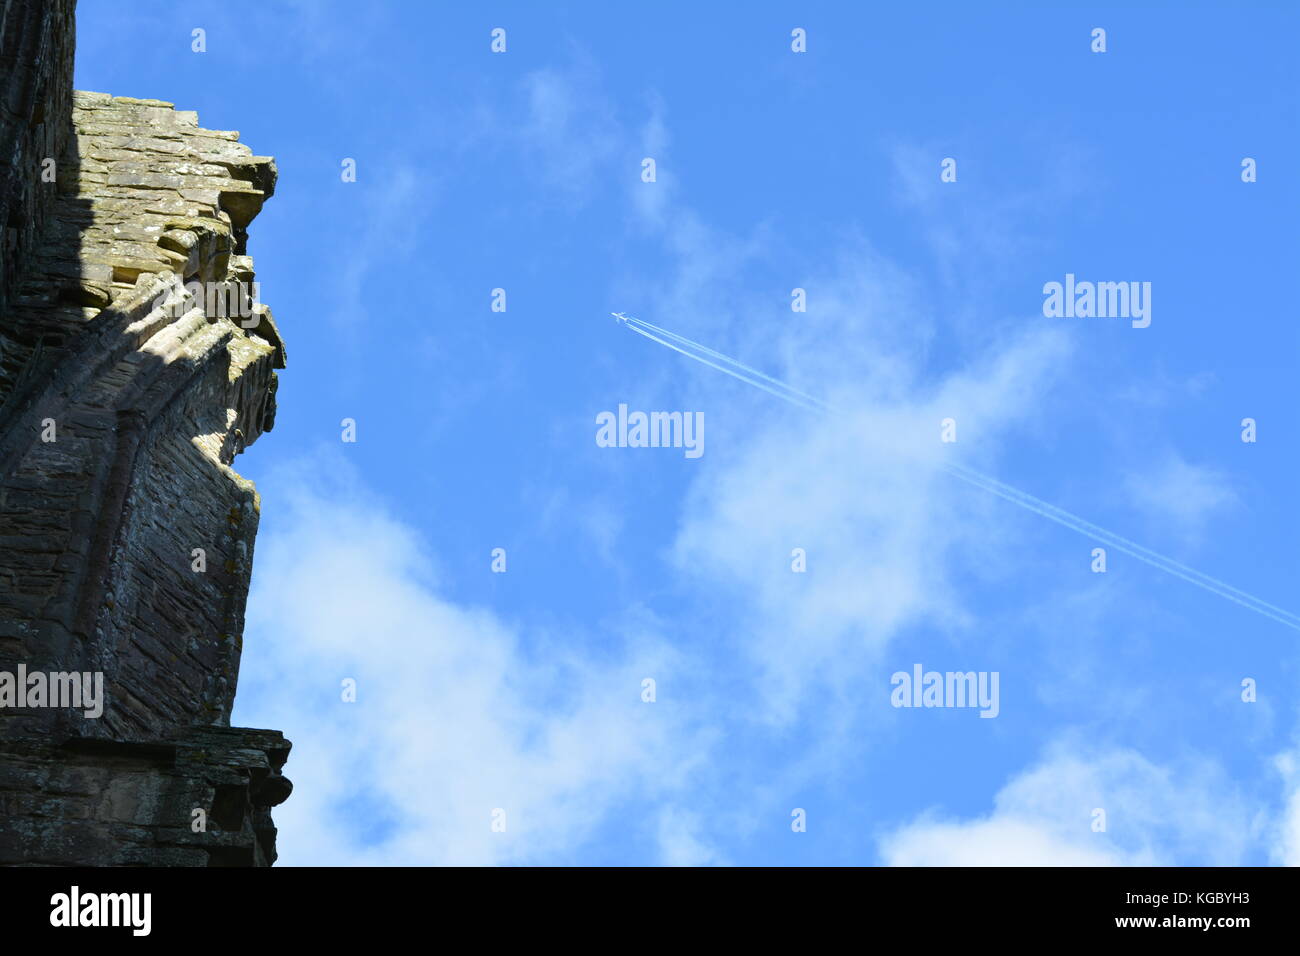 Sunny autunnale di cielo blu con nuvole wispy mostrando aereo passeggeri e sentieri di vapore sorvolano le rovine del vecchio monastero Abbazia di Tintern monmouthshire Foto Stock